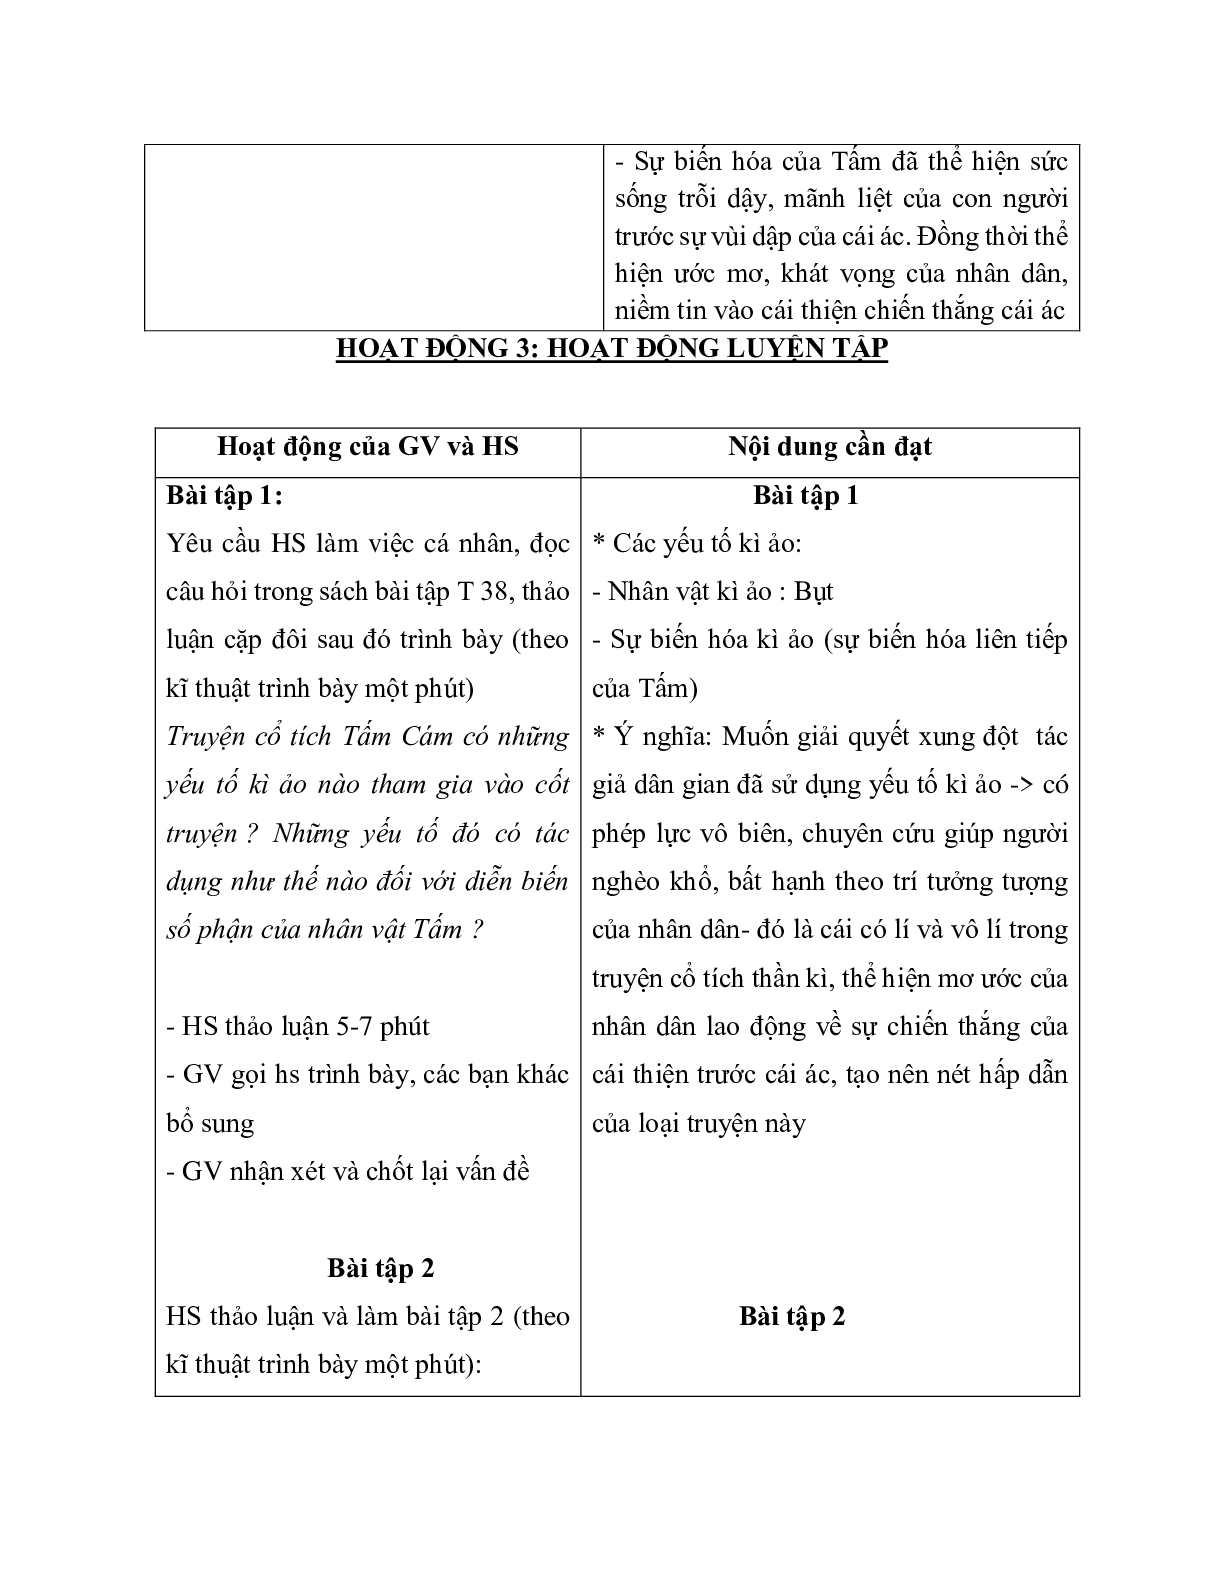 Giáo án ngữ văn lớp 10 Tiết 14, 15: Tấm Cám (trang 7)